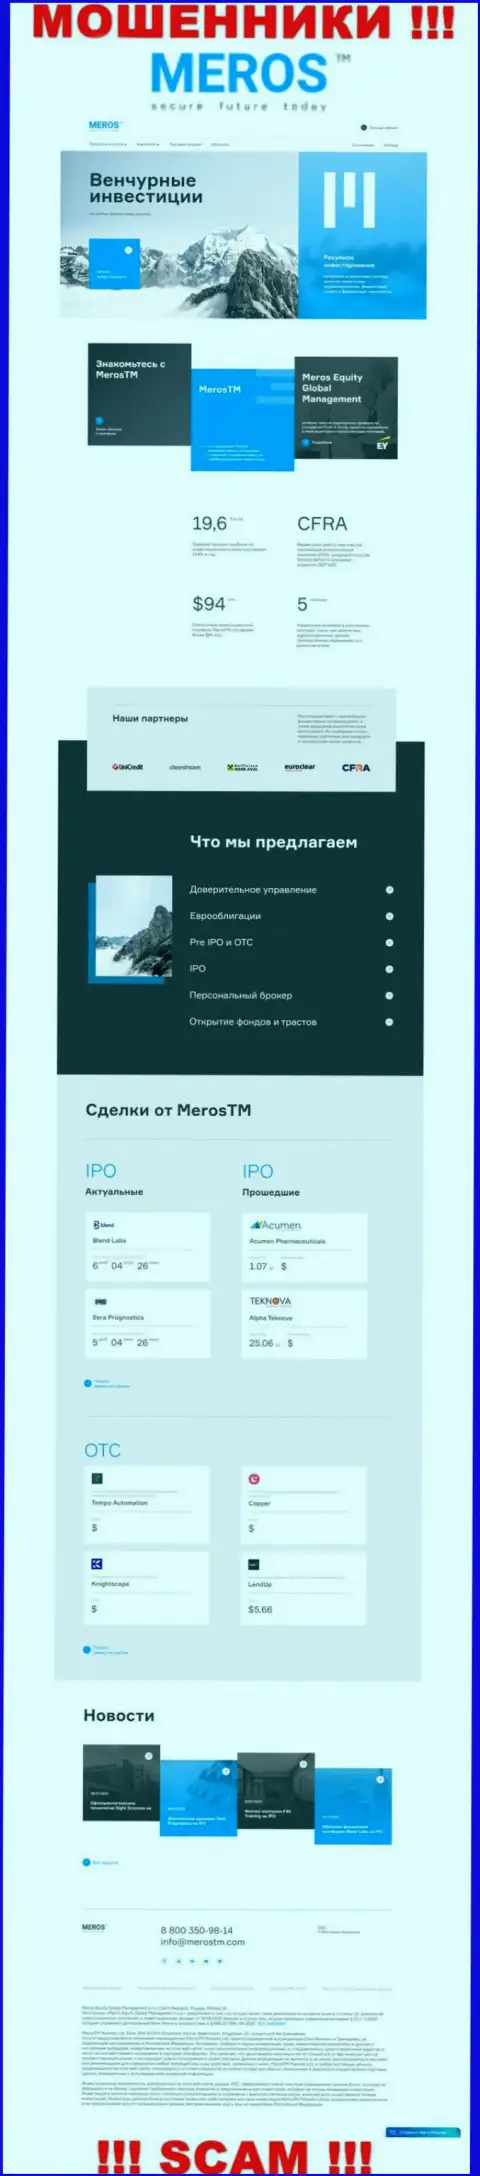 Обзор официального веб-сайта ворюг MerosMT Markets LLC